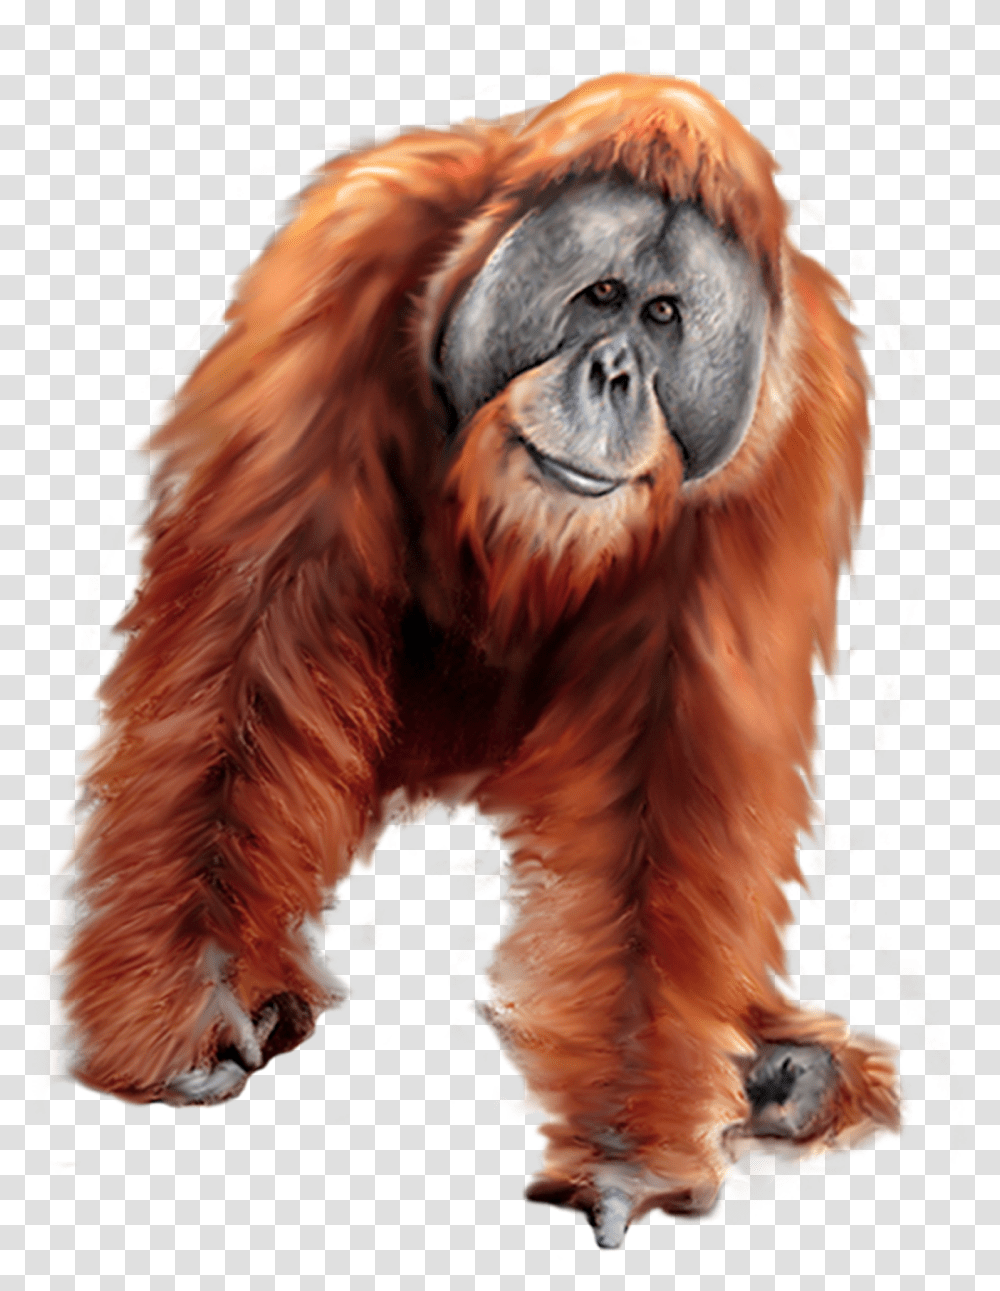 Orangutan Clipart, Mammal, Animal, Wildlife, Dog Transparent Png